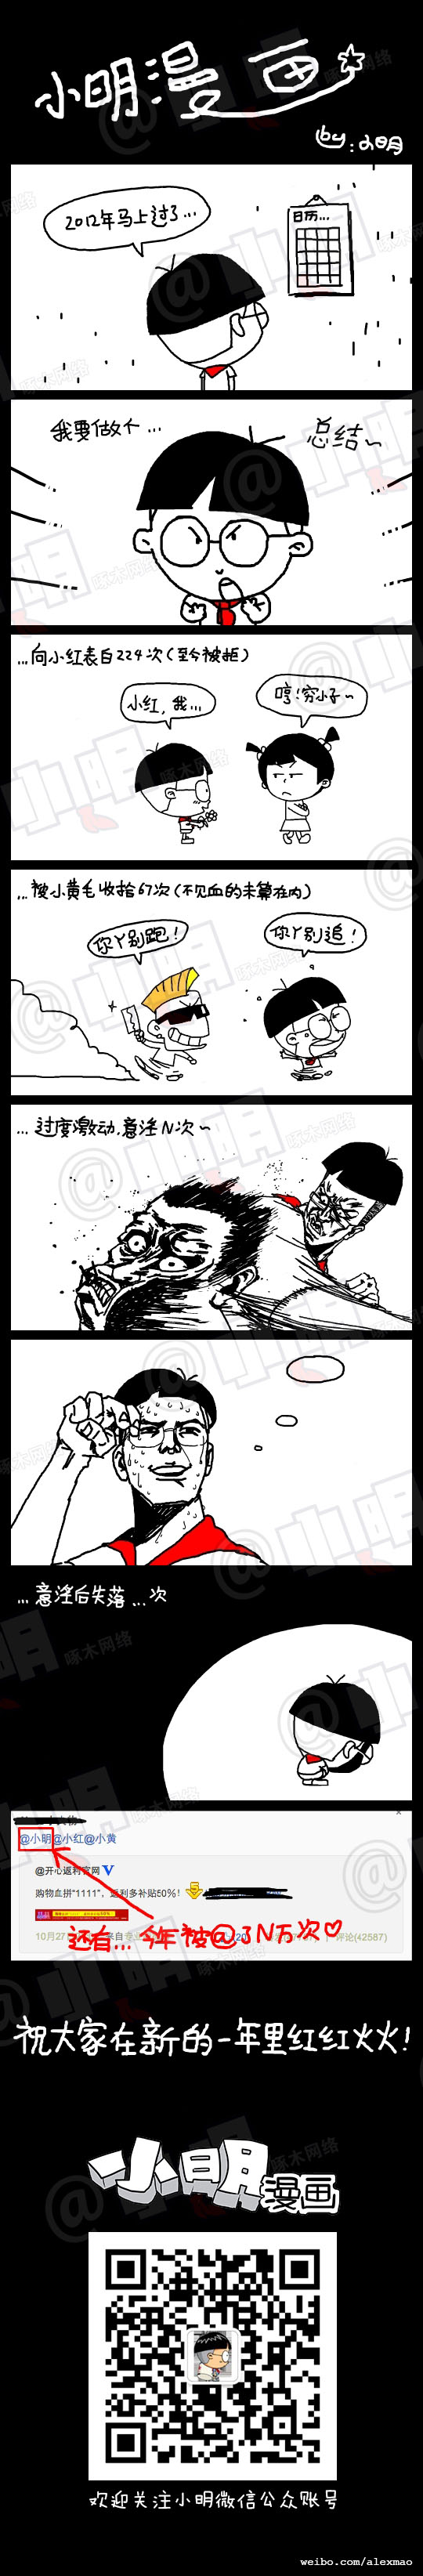 小明系列漫画——2012年度大总结